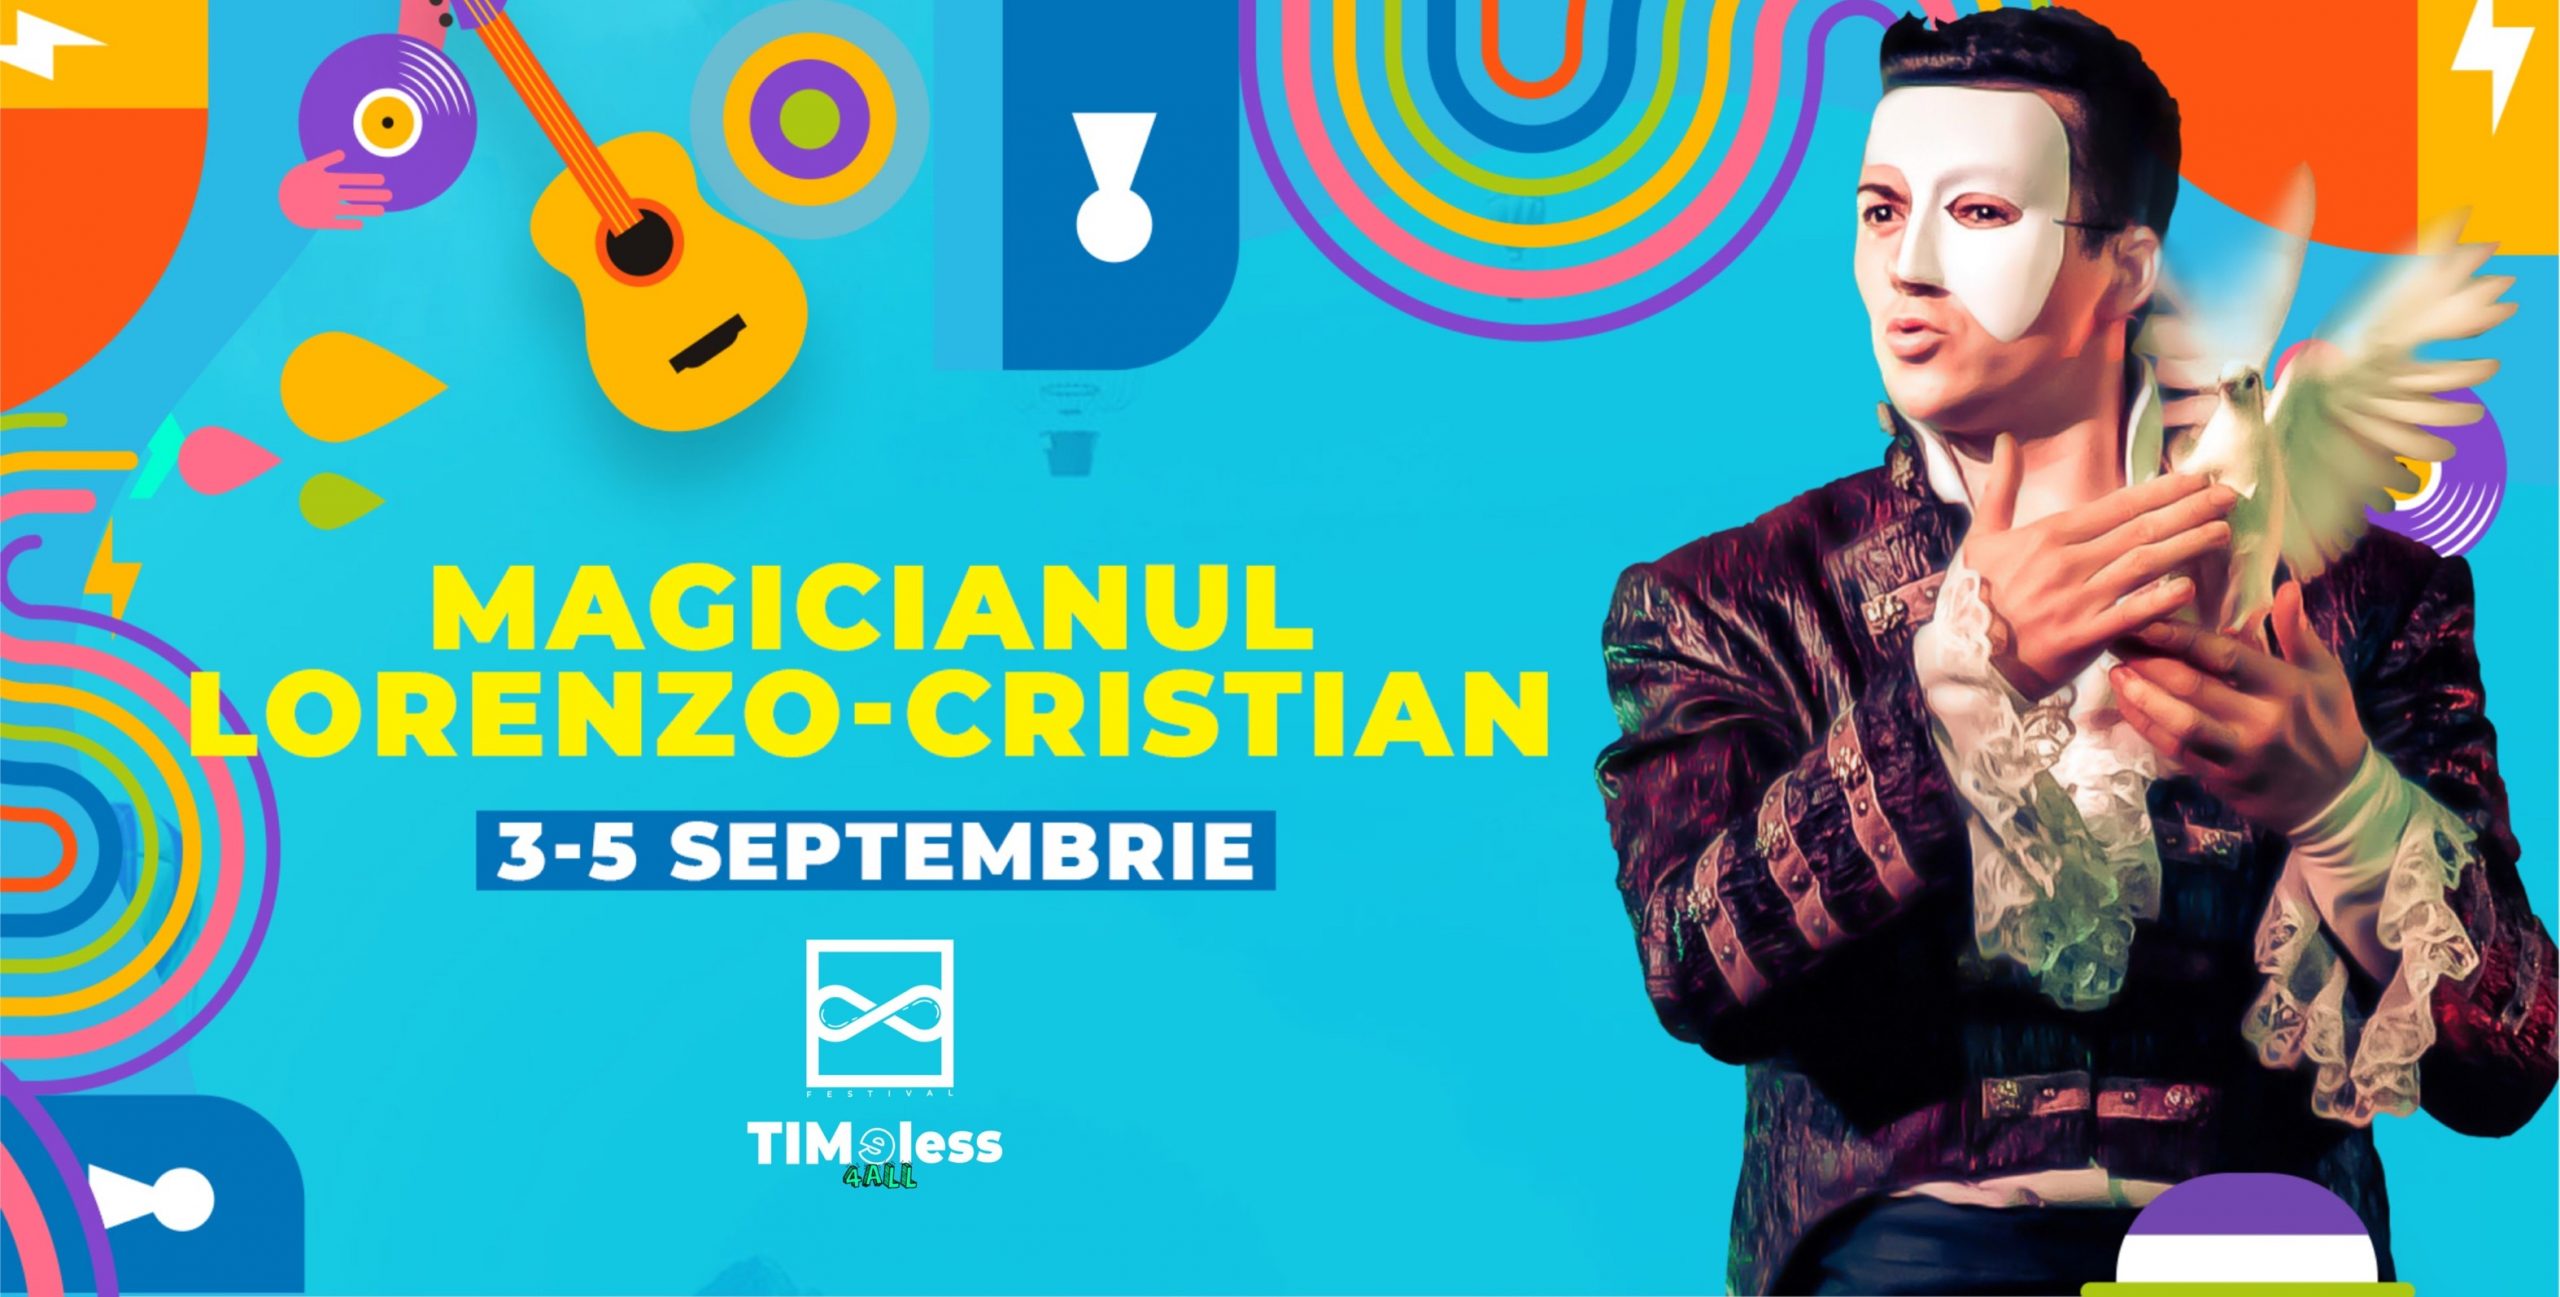 Iluzionistul Lorenzo-Cristian vrea să creeze la Timișoara un Fantasy Land